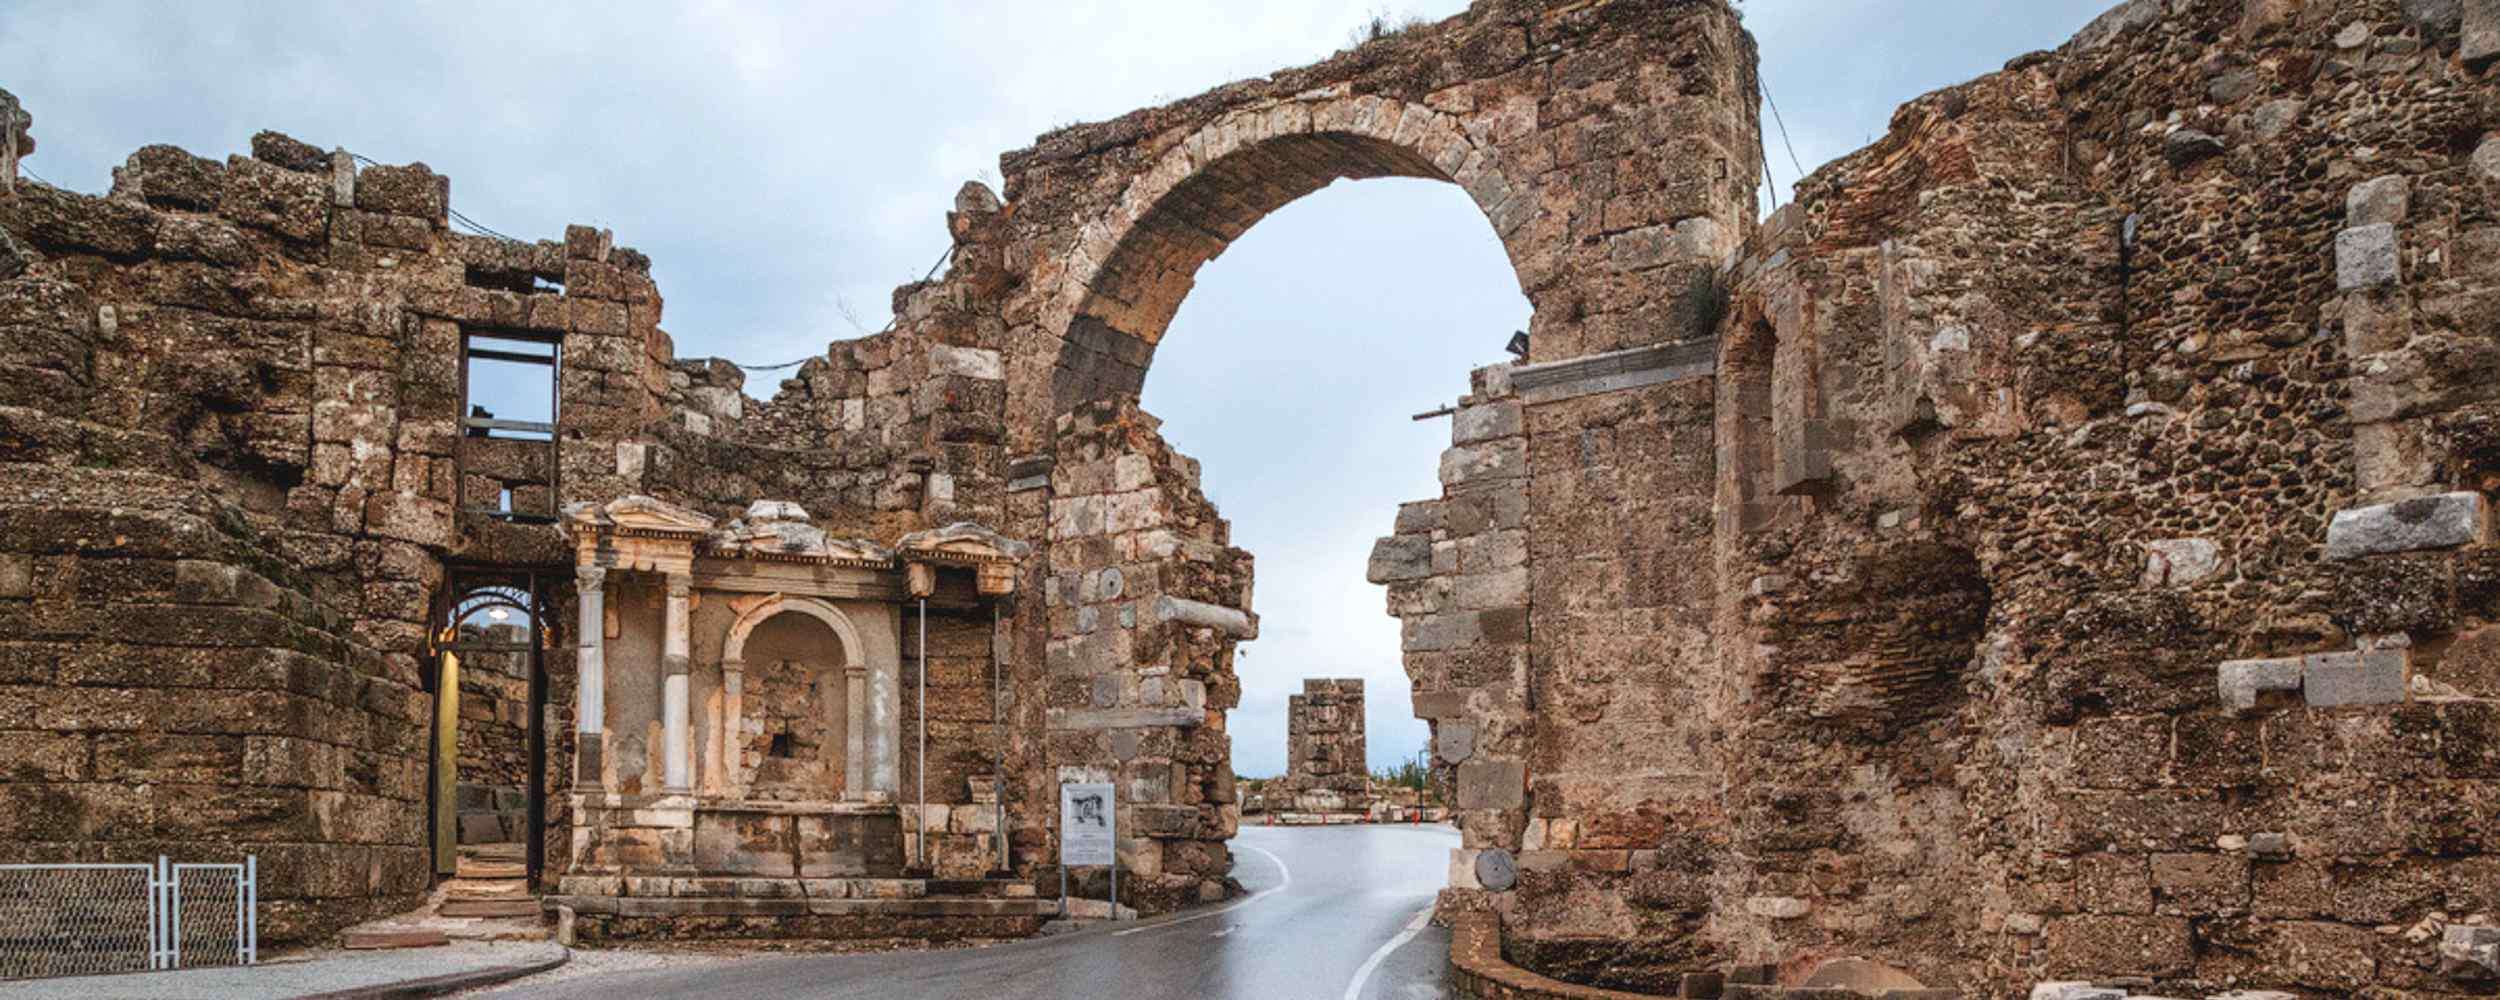 Турция сиде какая. Центр Сиде античный город. Античный Сиде руины. Развалины античного города Сиде. Сиде древний город развалины.